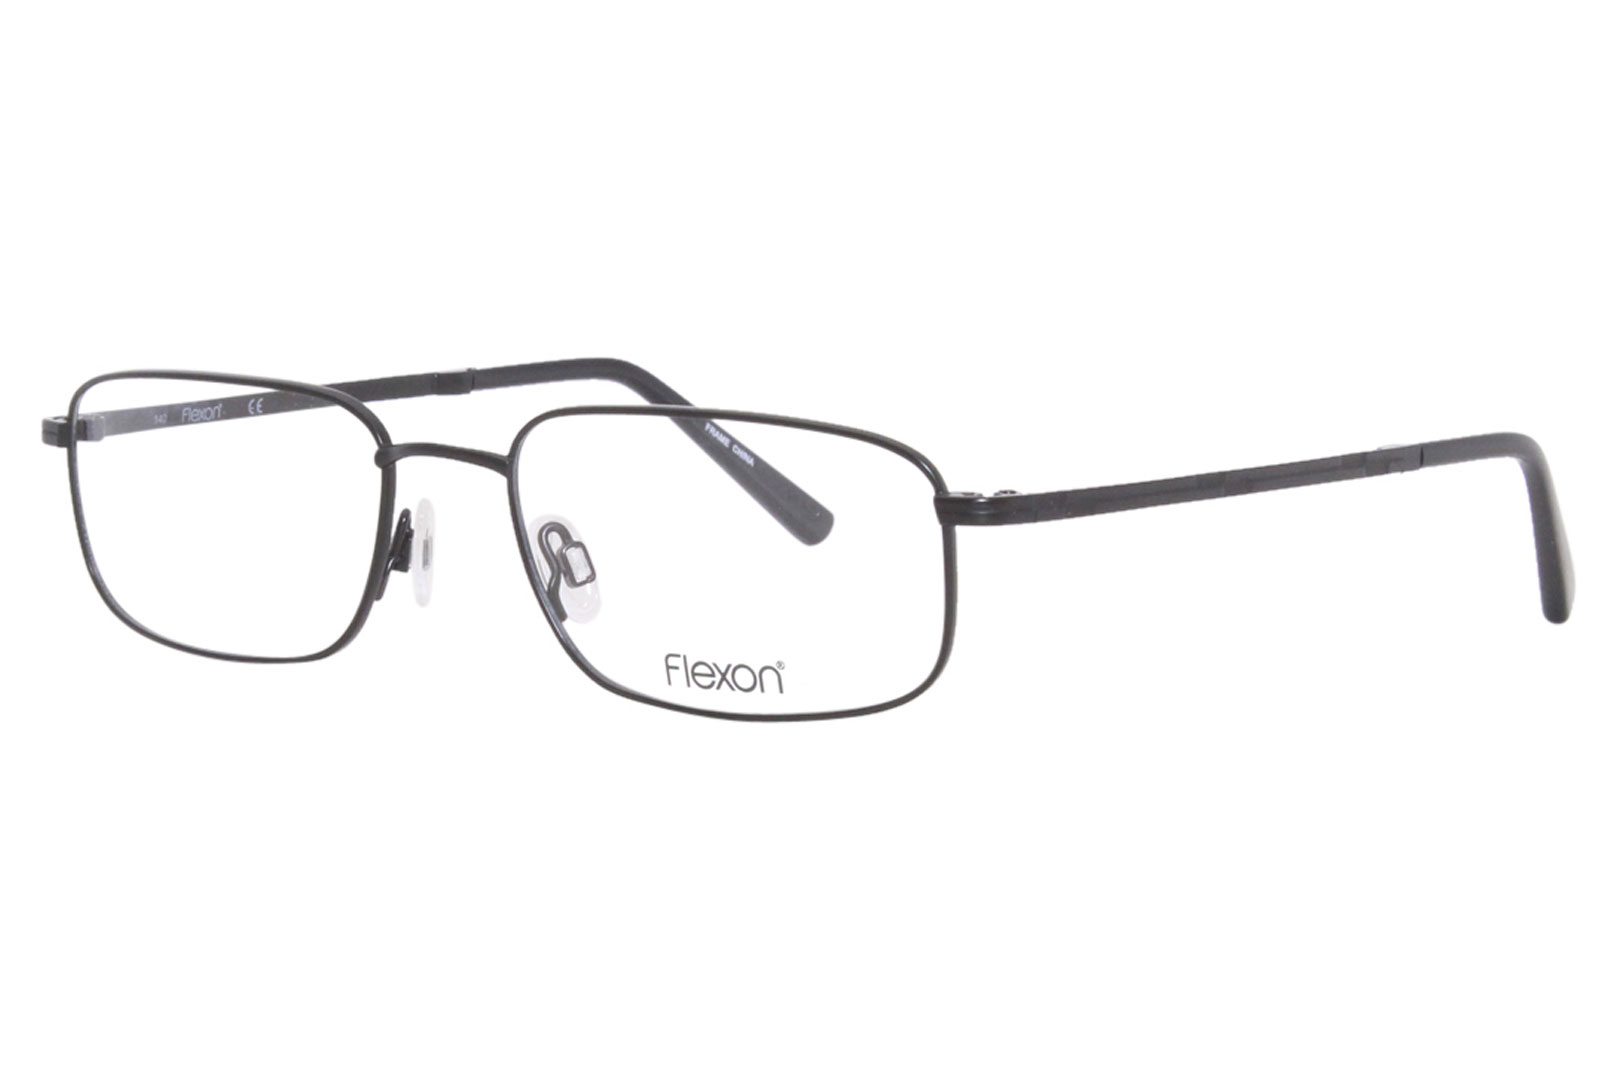 Flexon Orwell 600 Eyeglasses Men's Full Rim Rectangle Shape | EyeSpecs.com